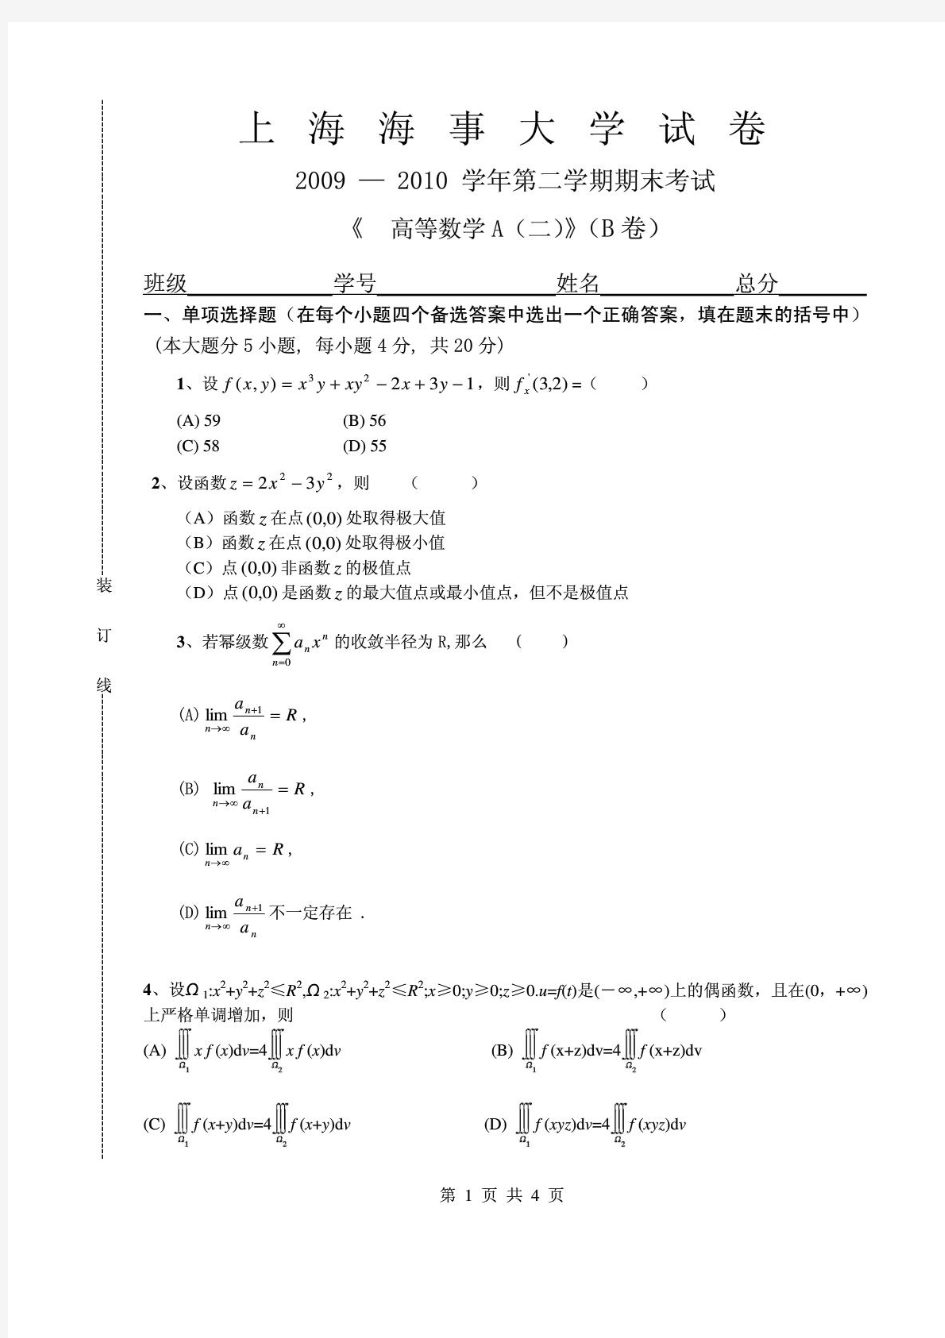 上海海事大学高等数学A(二)2009-2010(B)